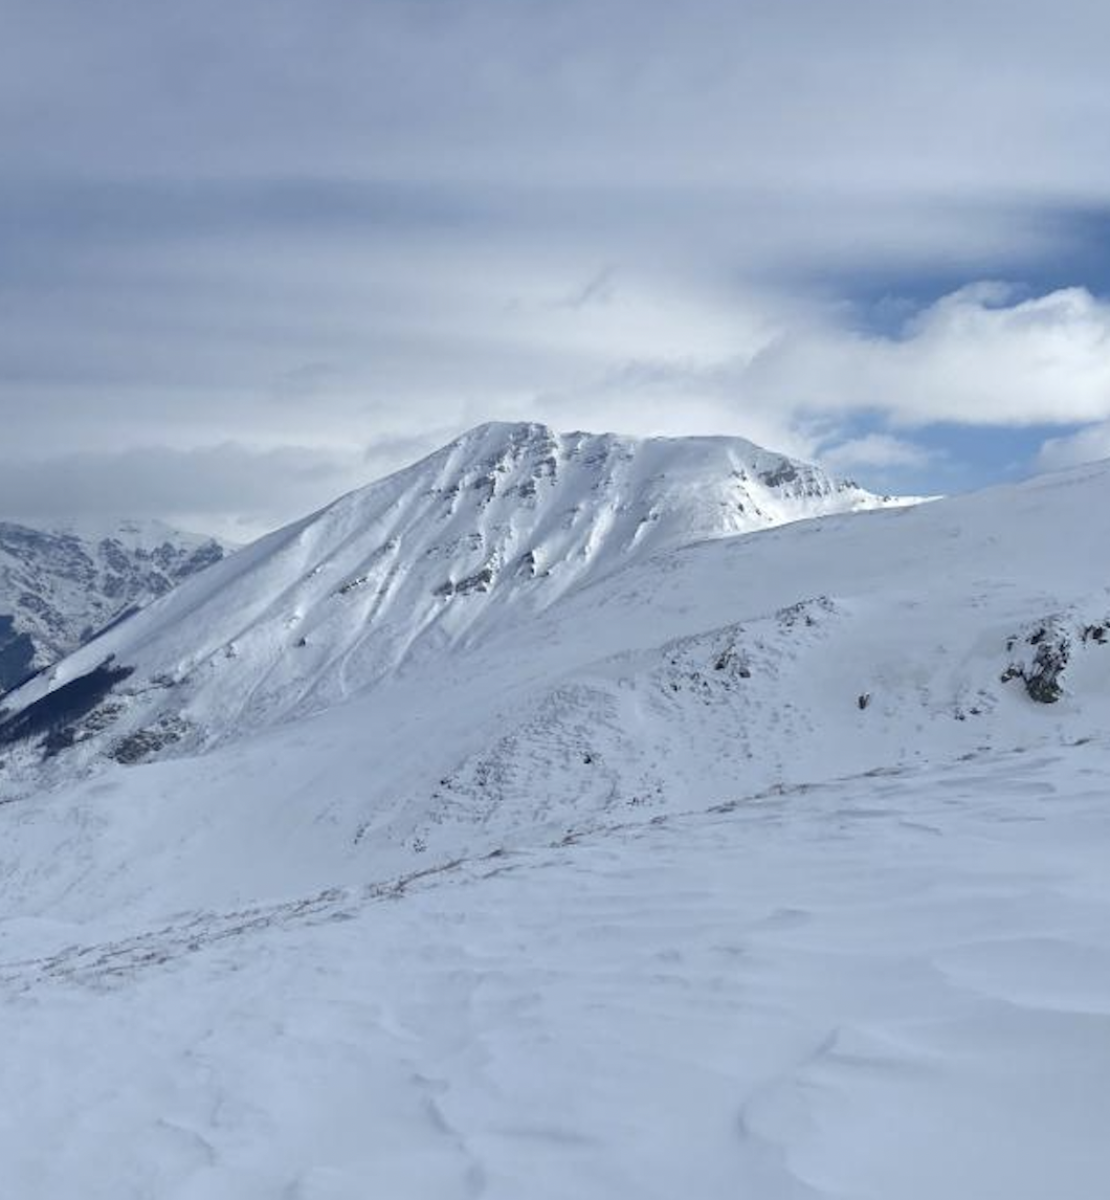 Una imagen de la cima de una montaña nevada en un día nublado.